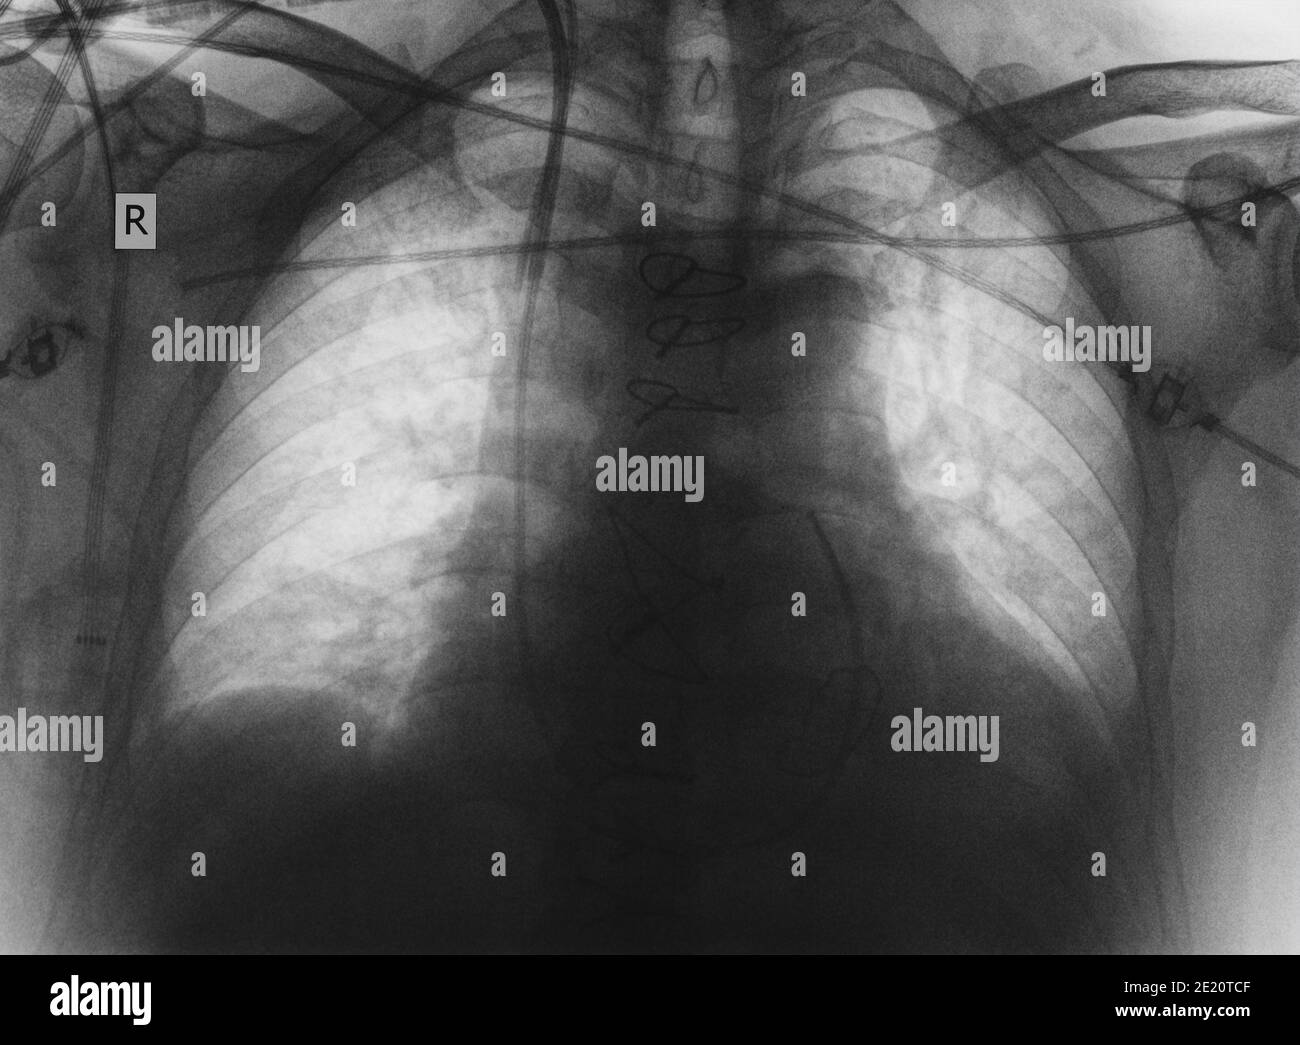 Immagine radiografica di polmoni e cuore. Foto Stock